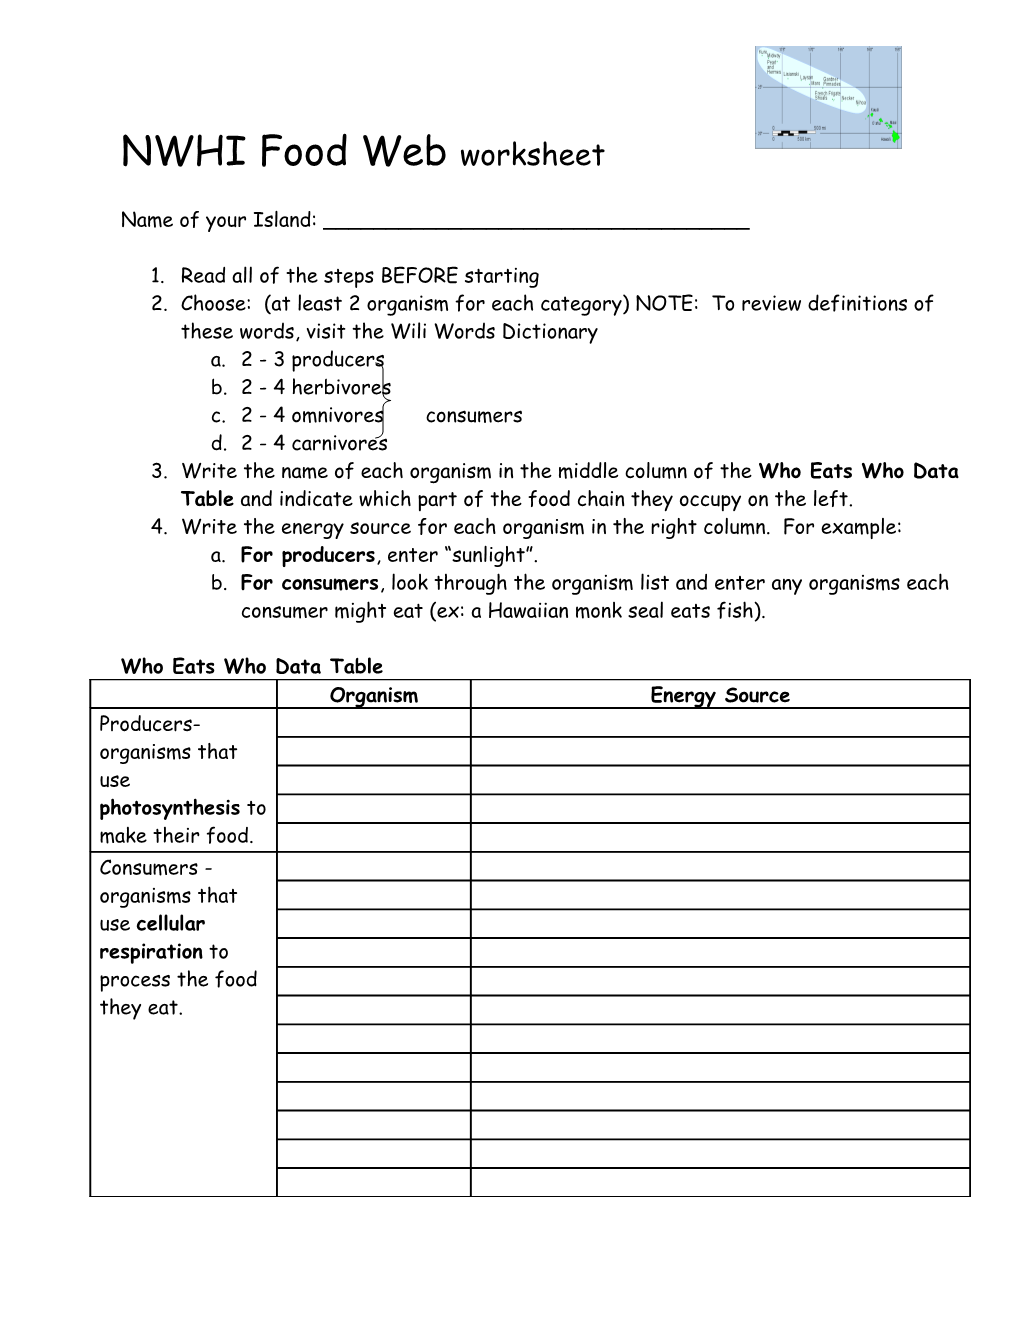 NWHI Food Web Worksheet